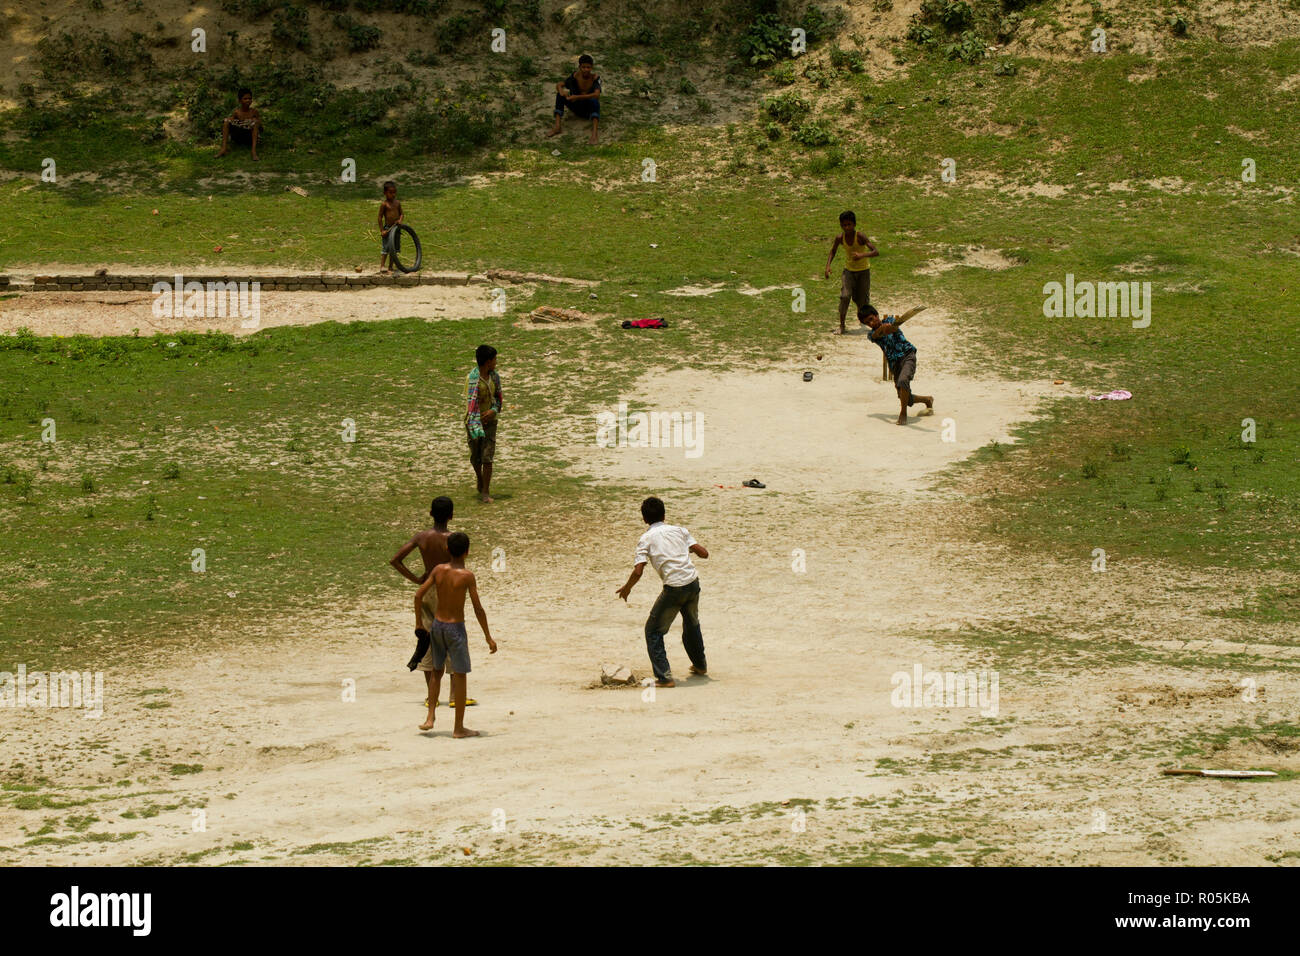 Les enfants ruraux jouer au cricket sur le terrain. Dinajpur, au Bangladesh. Banque D'Images